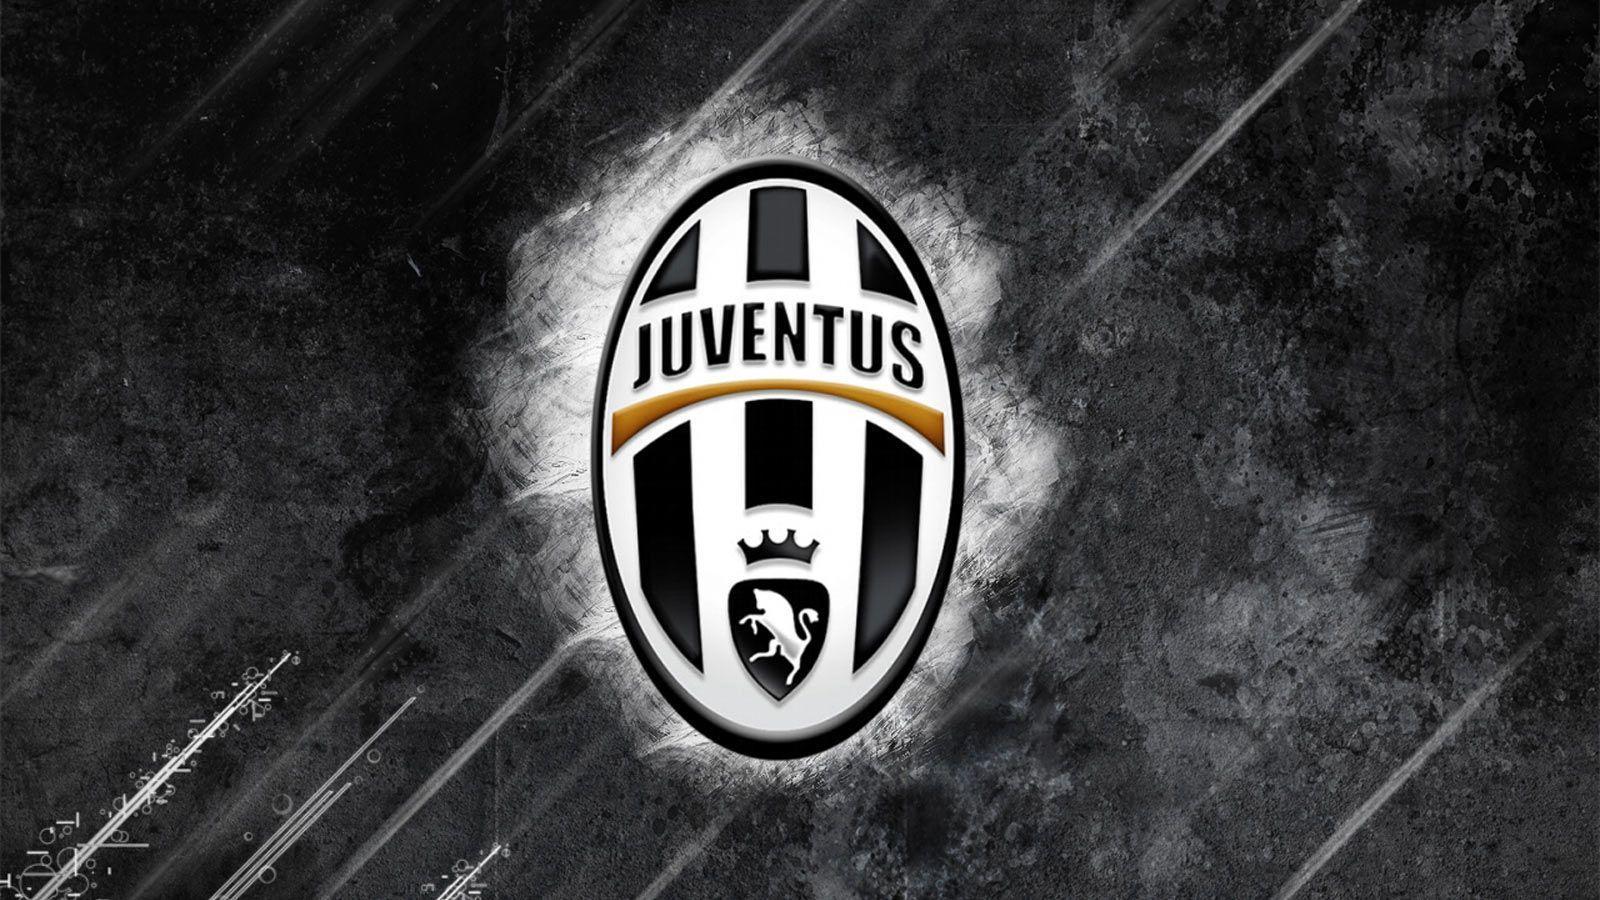 Fonds d&;écran Juventus, tous les wallpaper Juventus